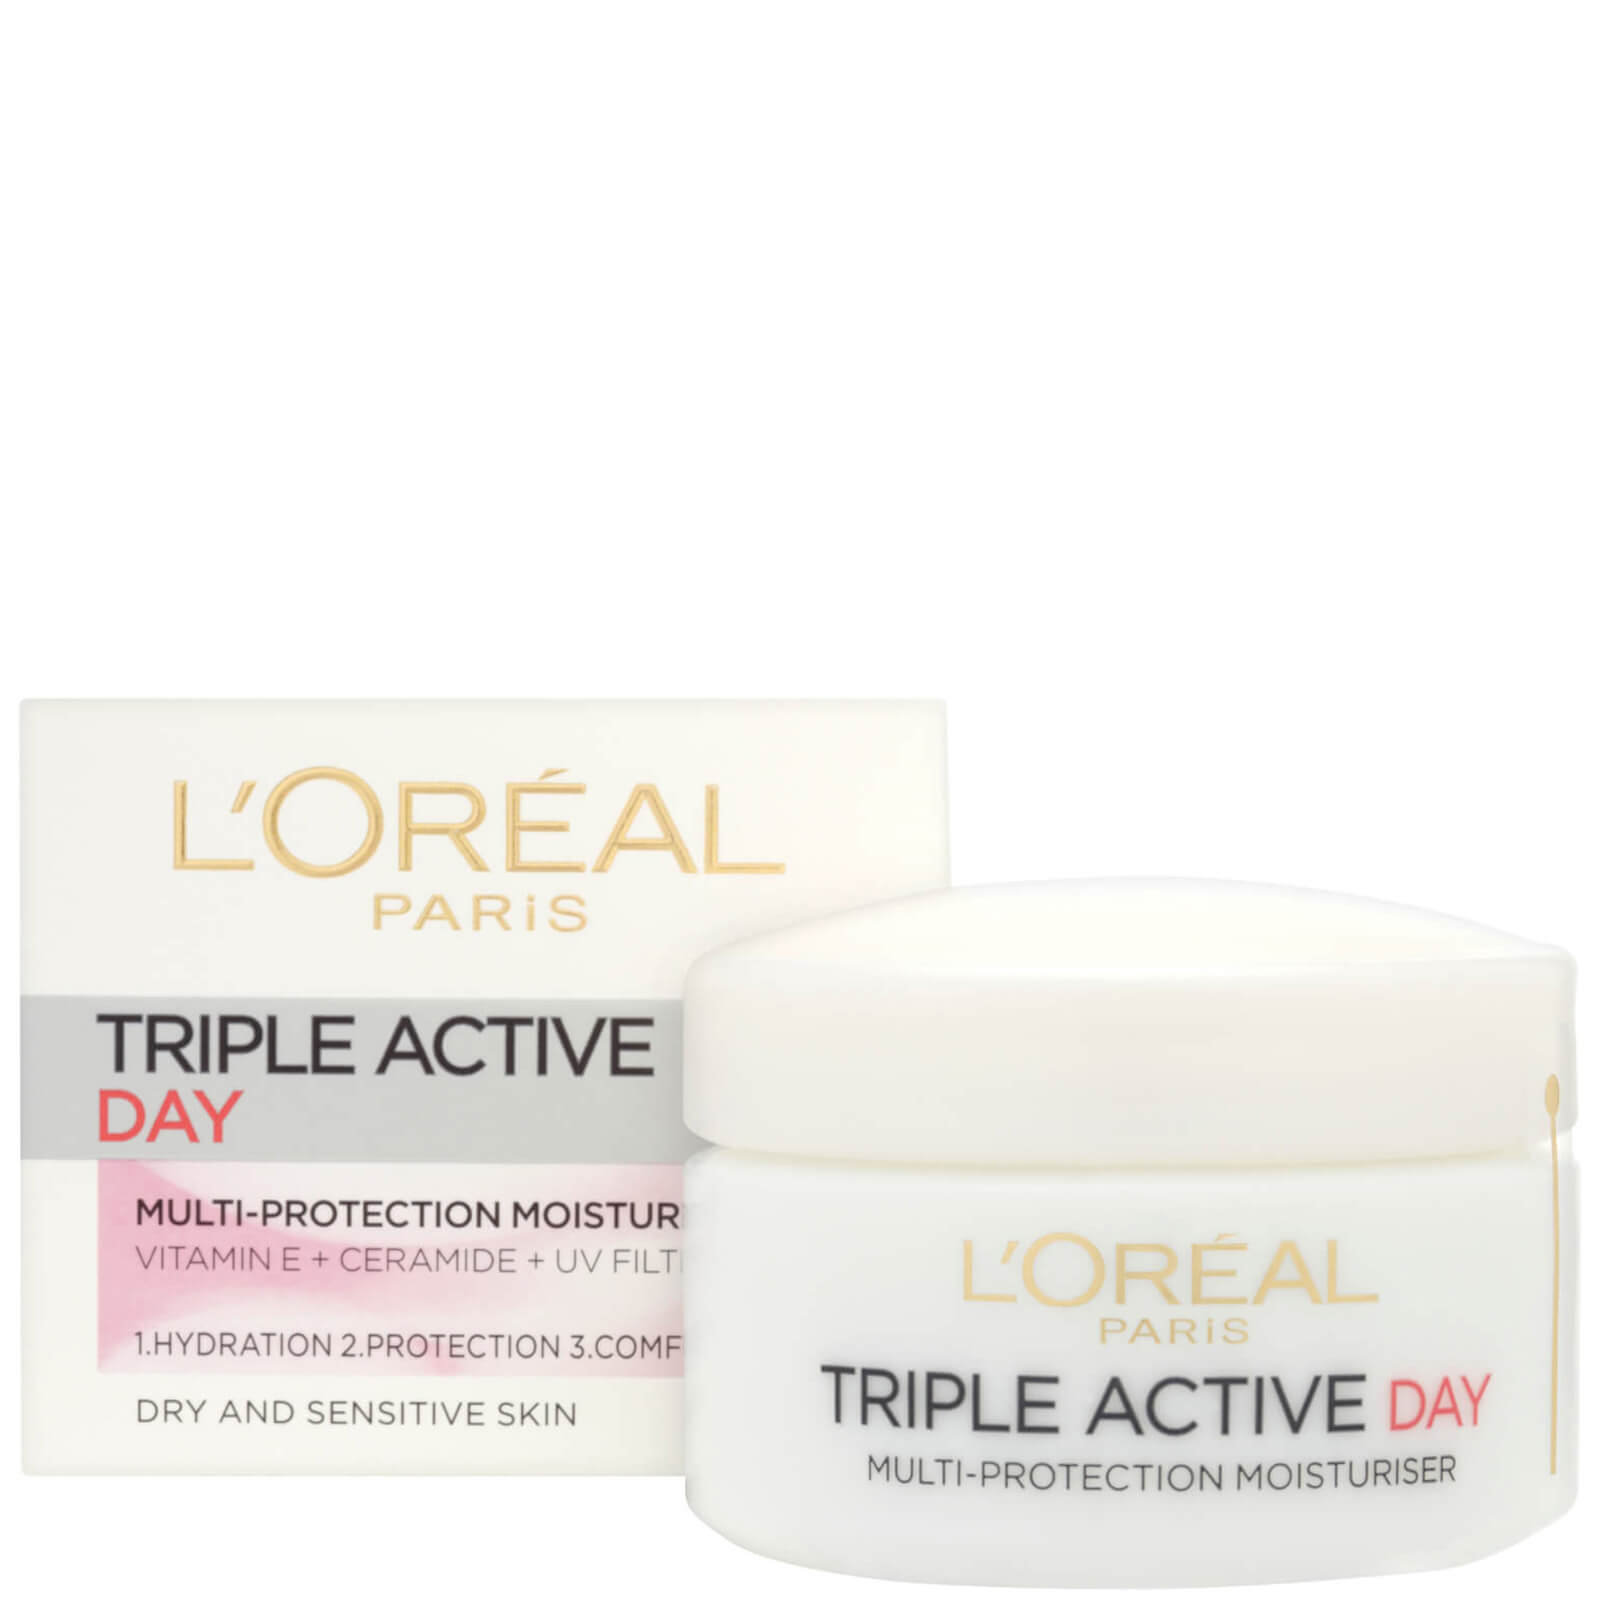 Image of L'Oréal Paris Dermo Expertise Tripla Attiva crema giorno idratante protettiva - pelli secche o sensibili (50 ml)